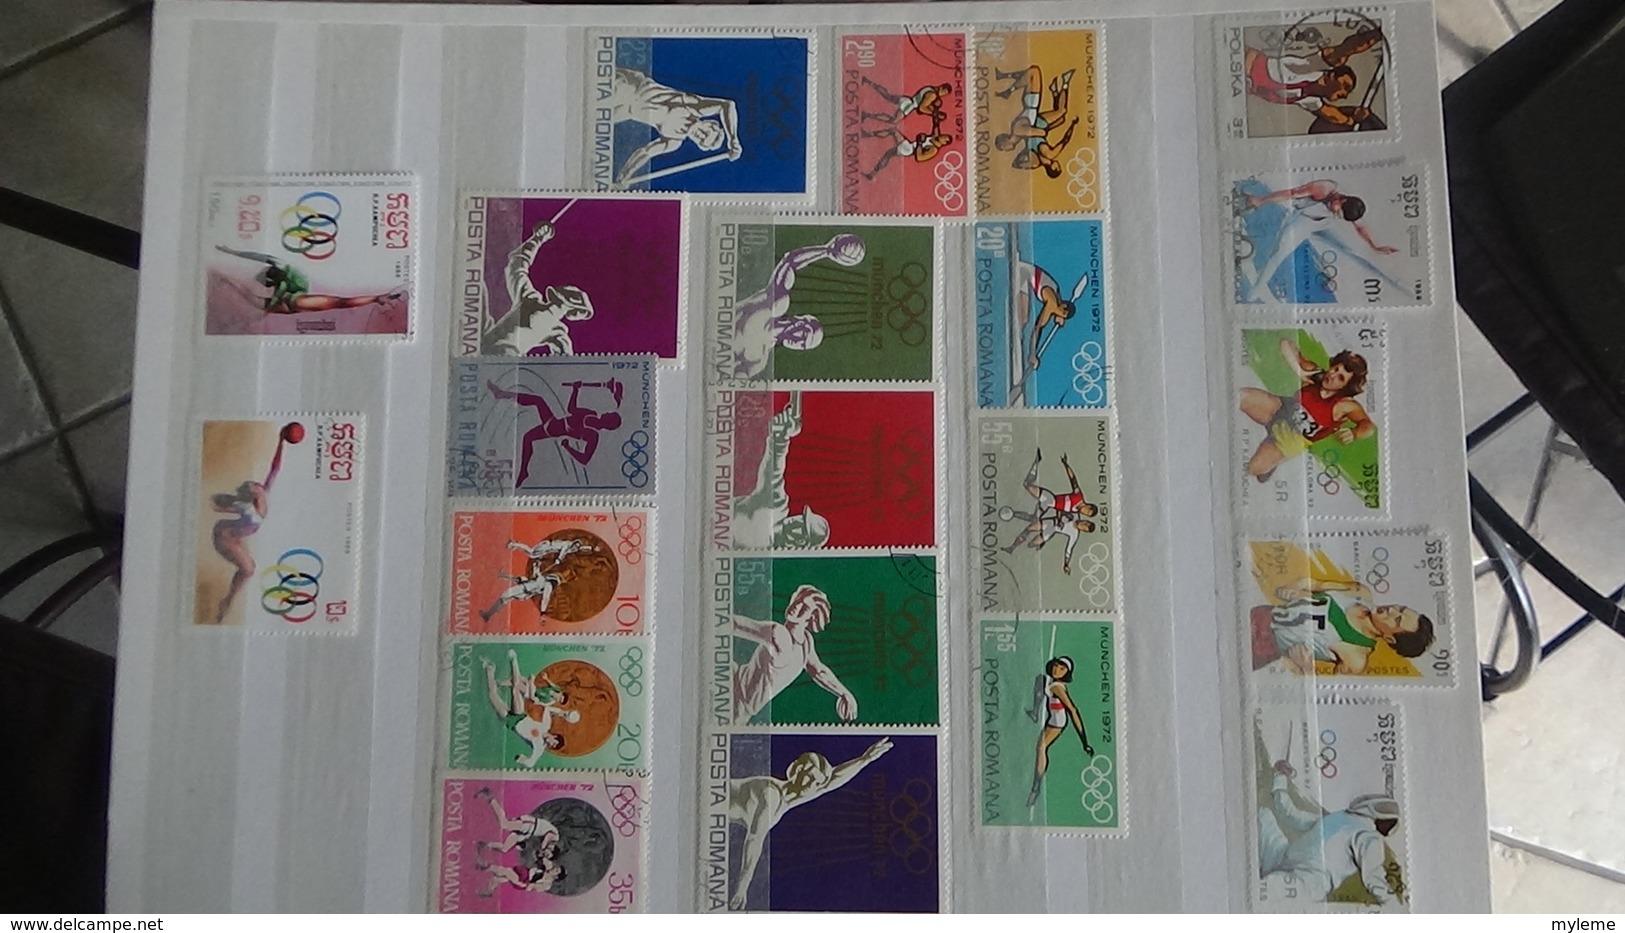 Gros album de thématiques Jeux Olympiques en timbres et blocs tous pays